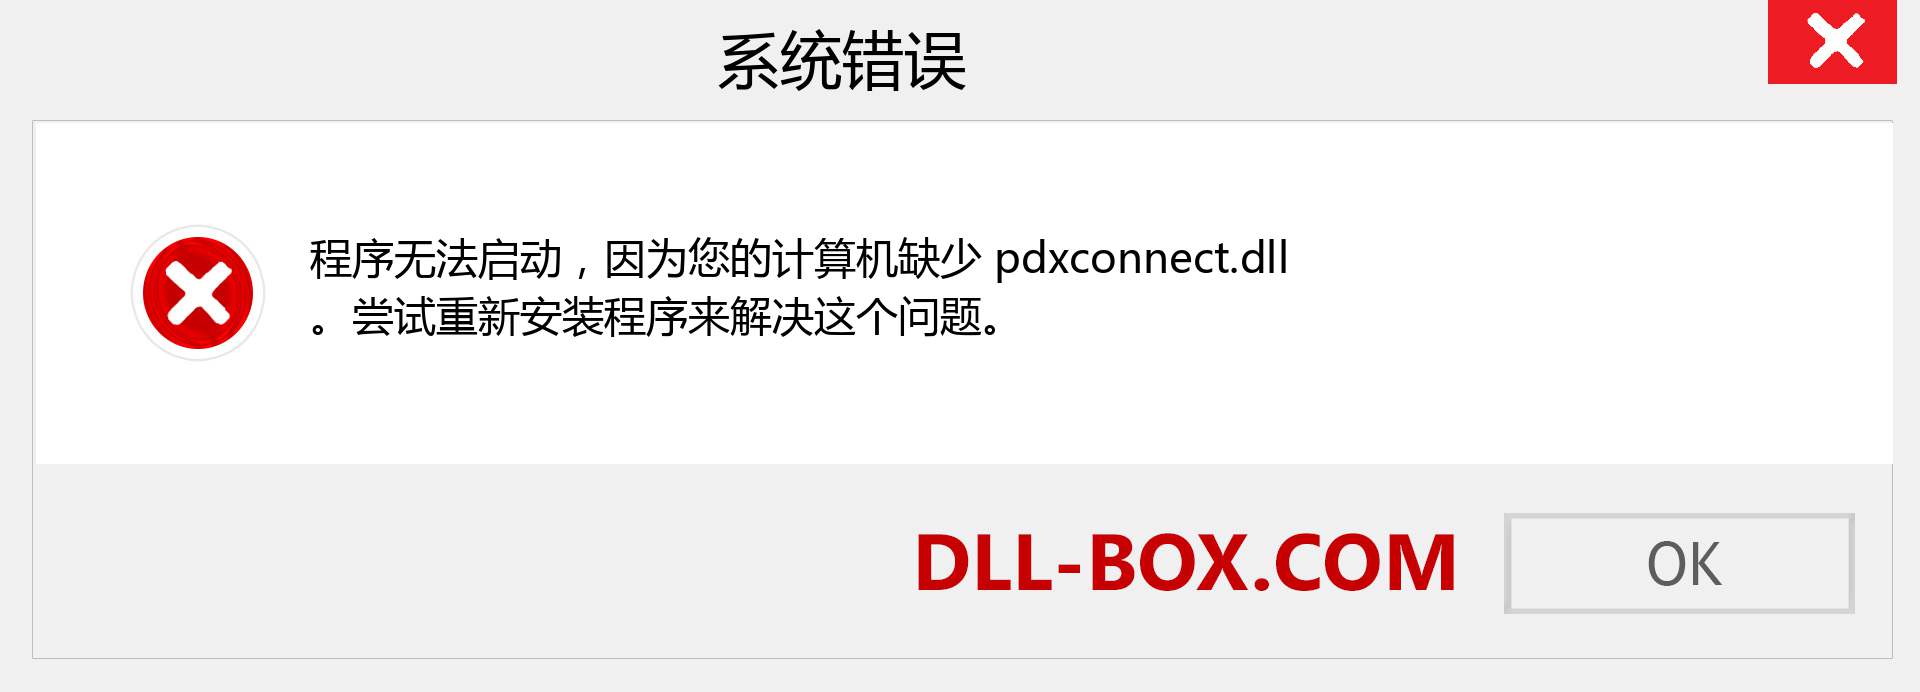 pdxconnect.dll 文件丢失？。 适用于 Windows 7、8、10 的下载 - 修复 Windows、照片、图像上的 pdxconnect dll 丢失错误